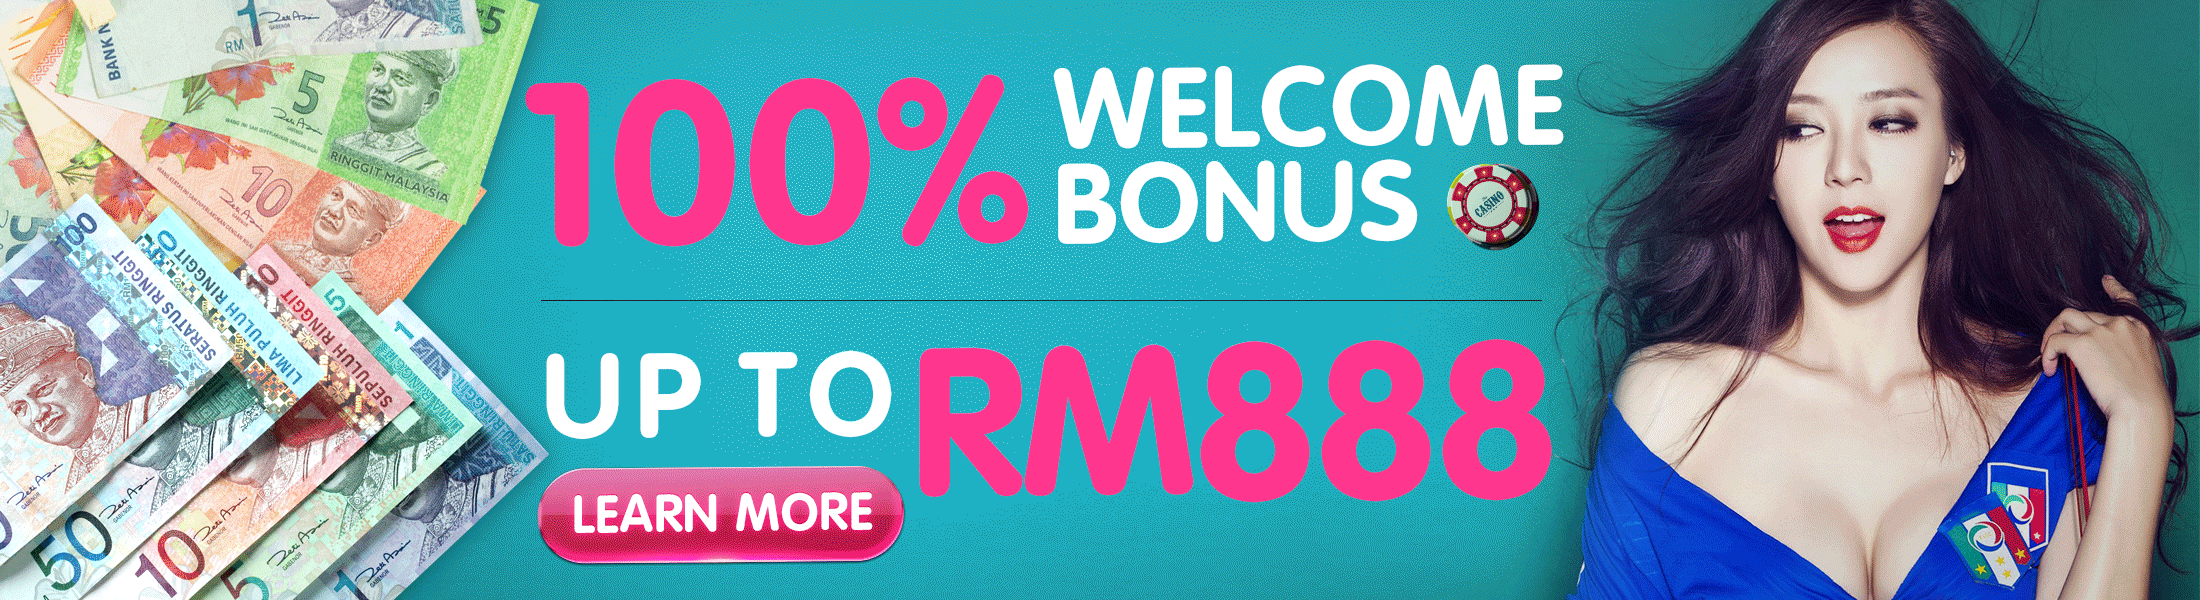 4Dresult 100% Welcome Bonus Up to MYR888!